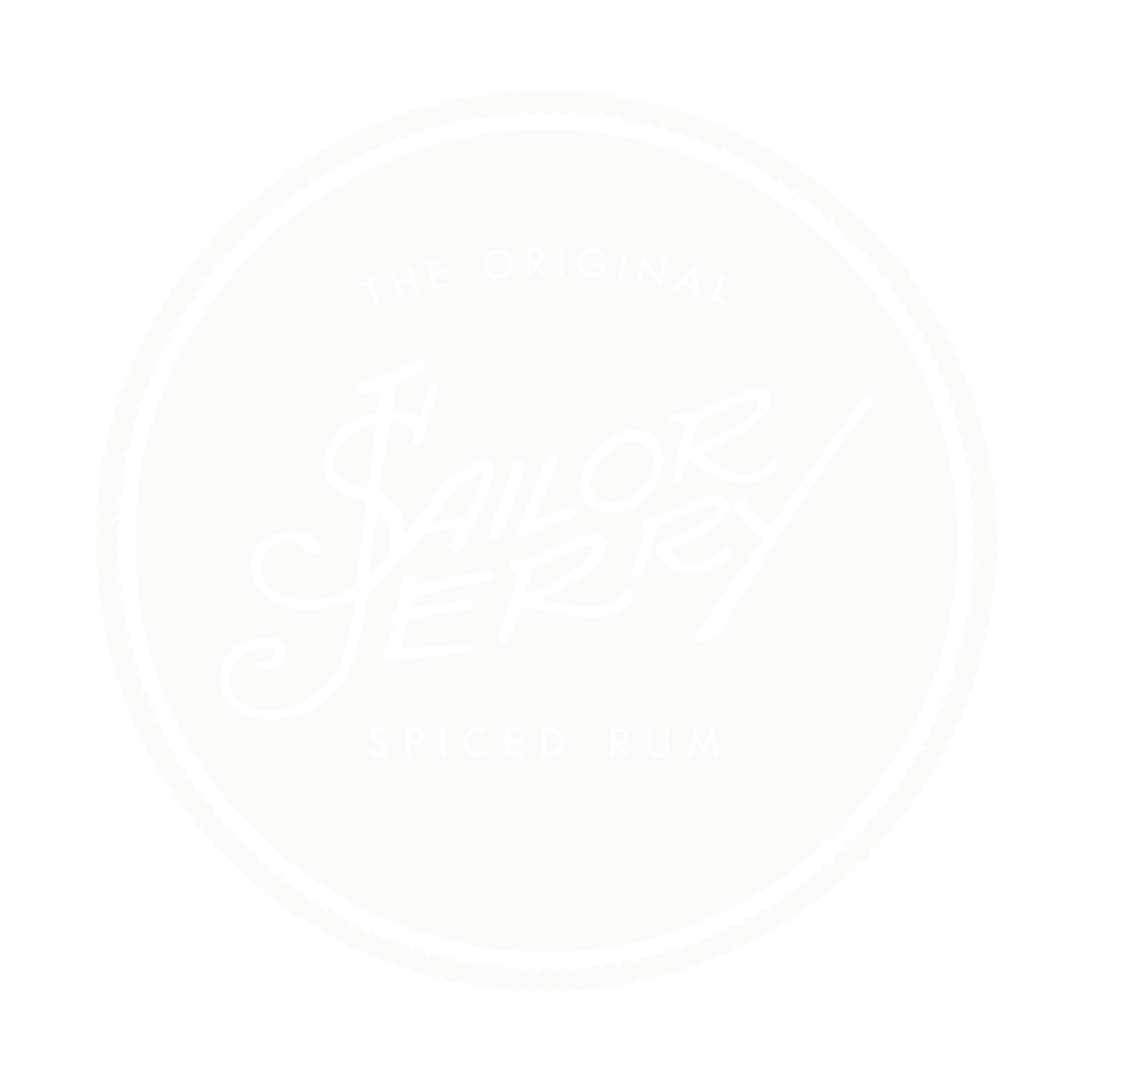 Sailor Jerry Wine